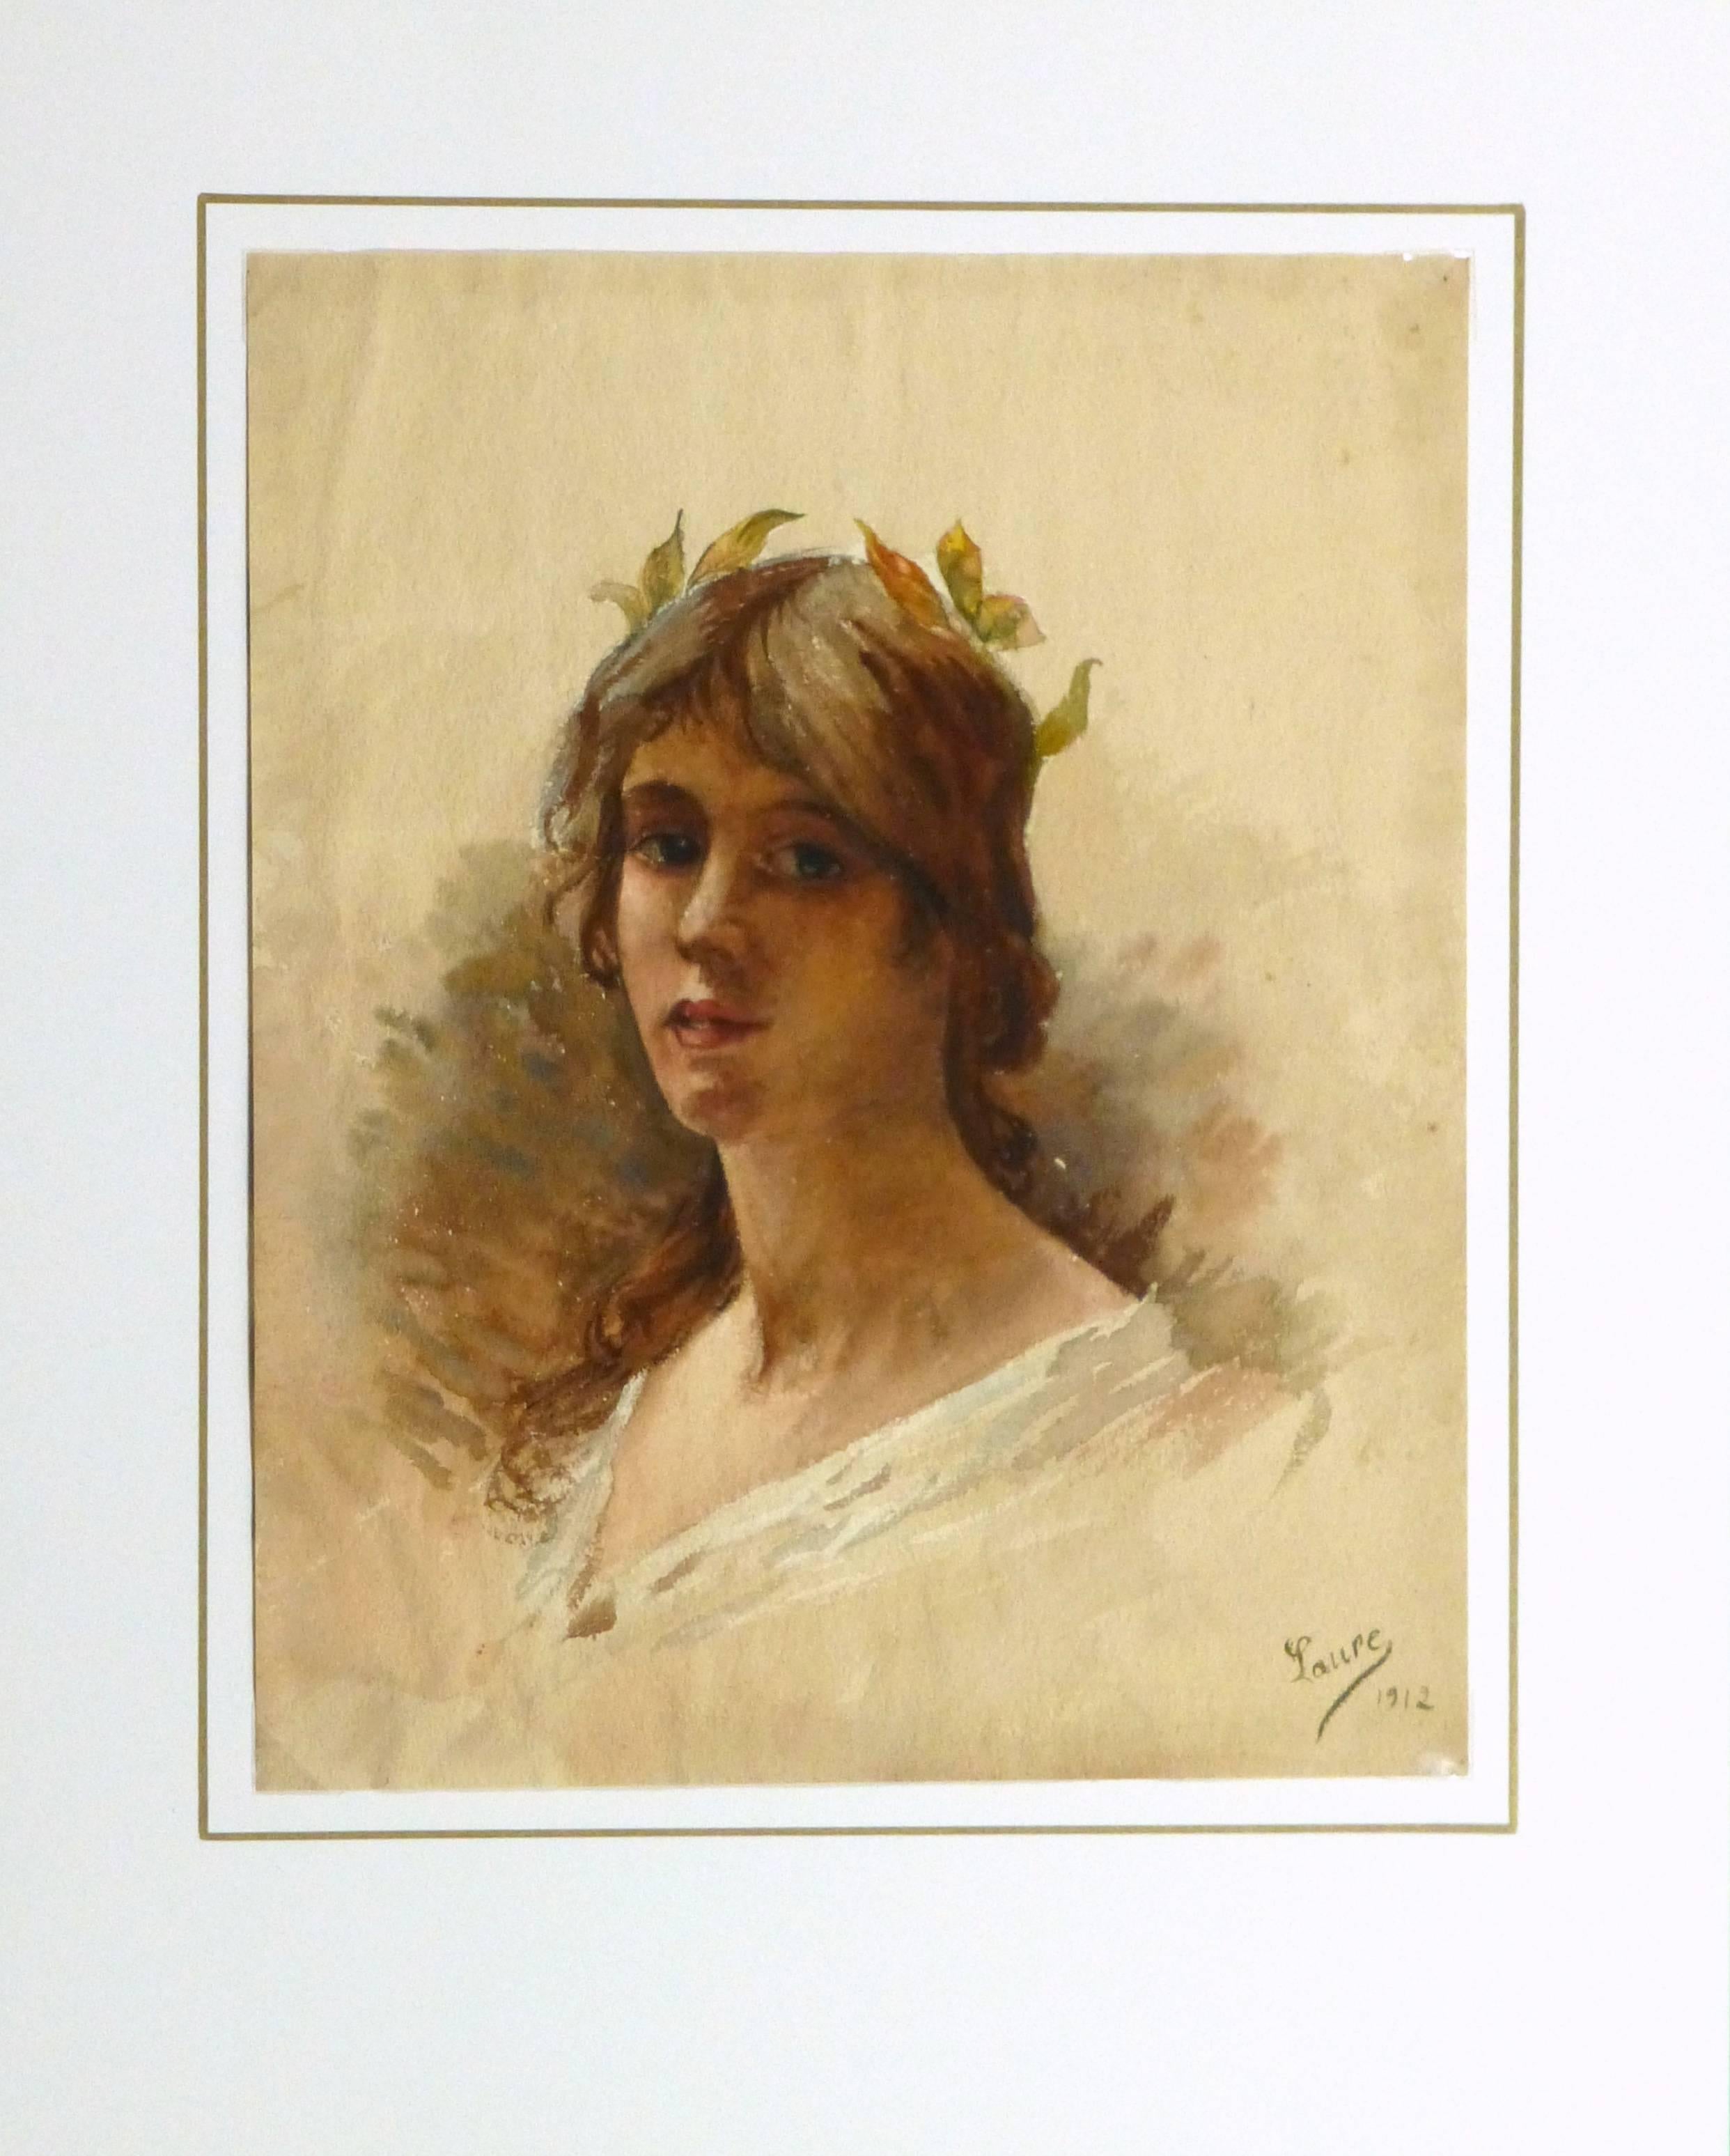 Warmes und angenehmes Aquarellporträt einer charmanten jungen Dame mit einer kleinen Krone auf Blättern, die ihr Haar akzentuiert, 1912. Signiert Laure und datiert unten rechts.

Einzigartiges Originalkunstwerk auf Papier, das auf einer weißen Matte